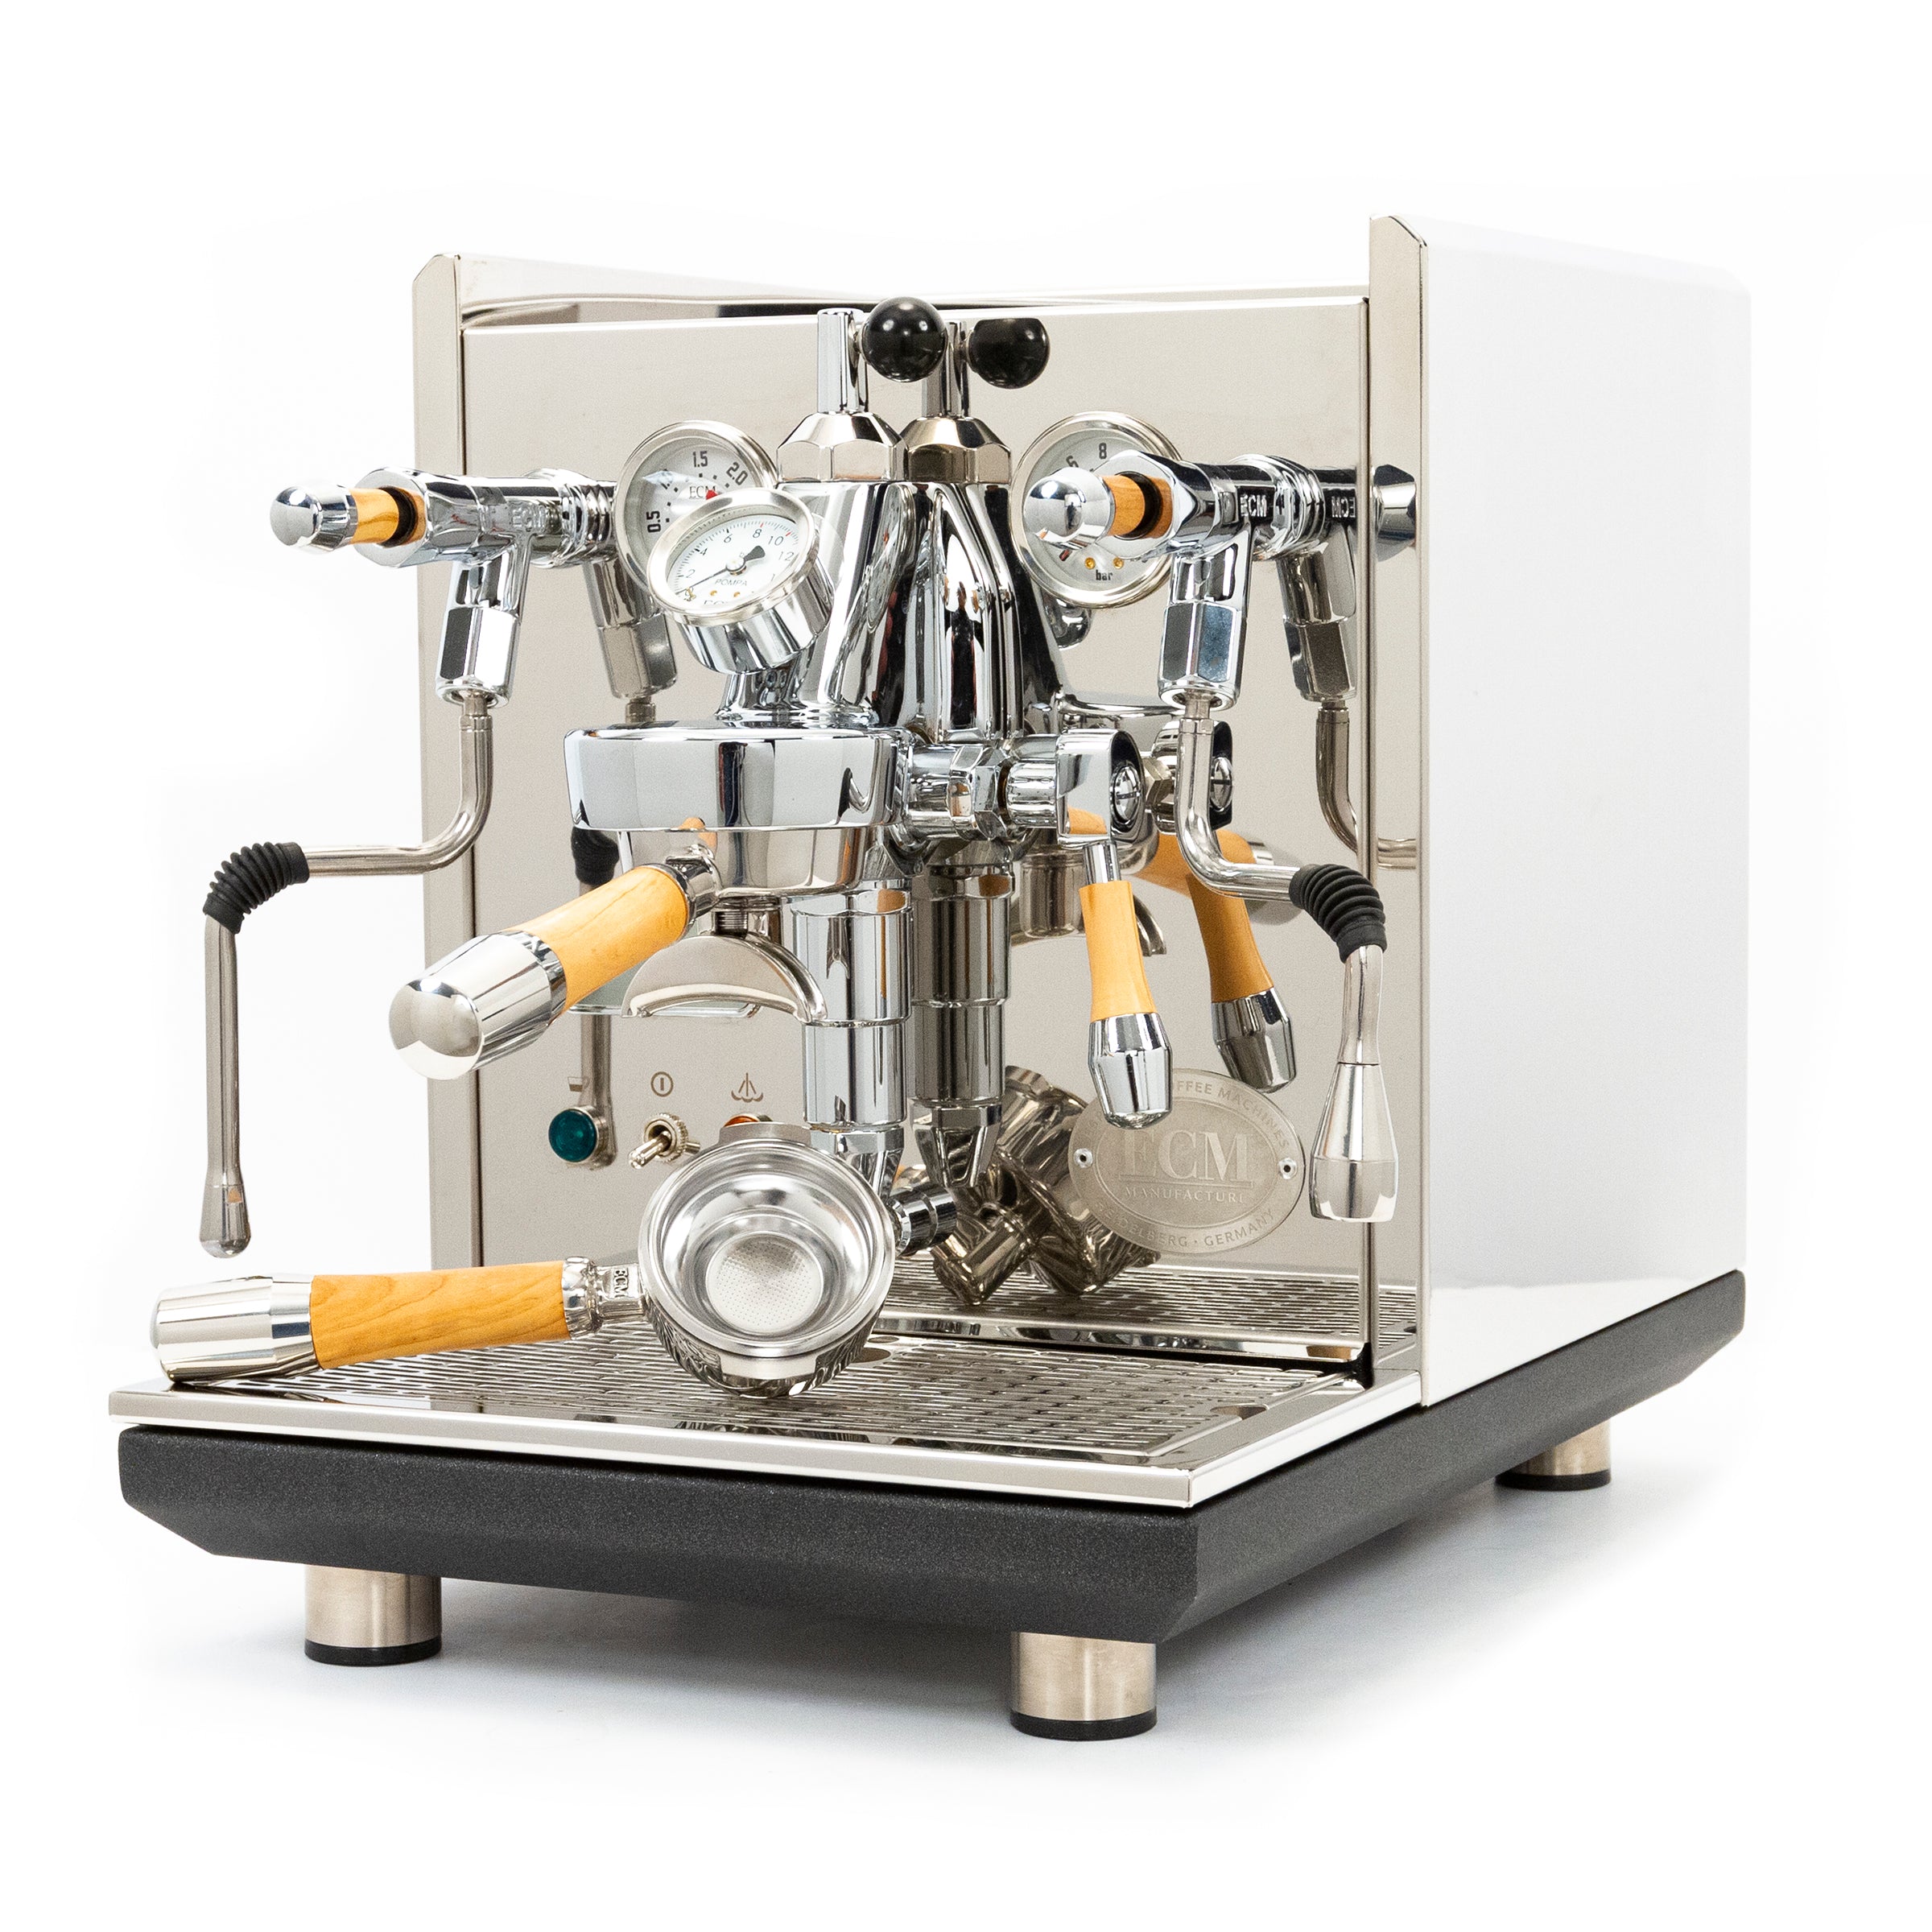 Espresso Machine Concept in Wood - Make